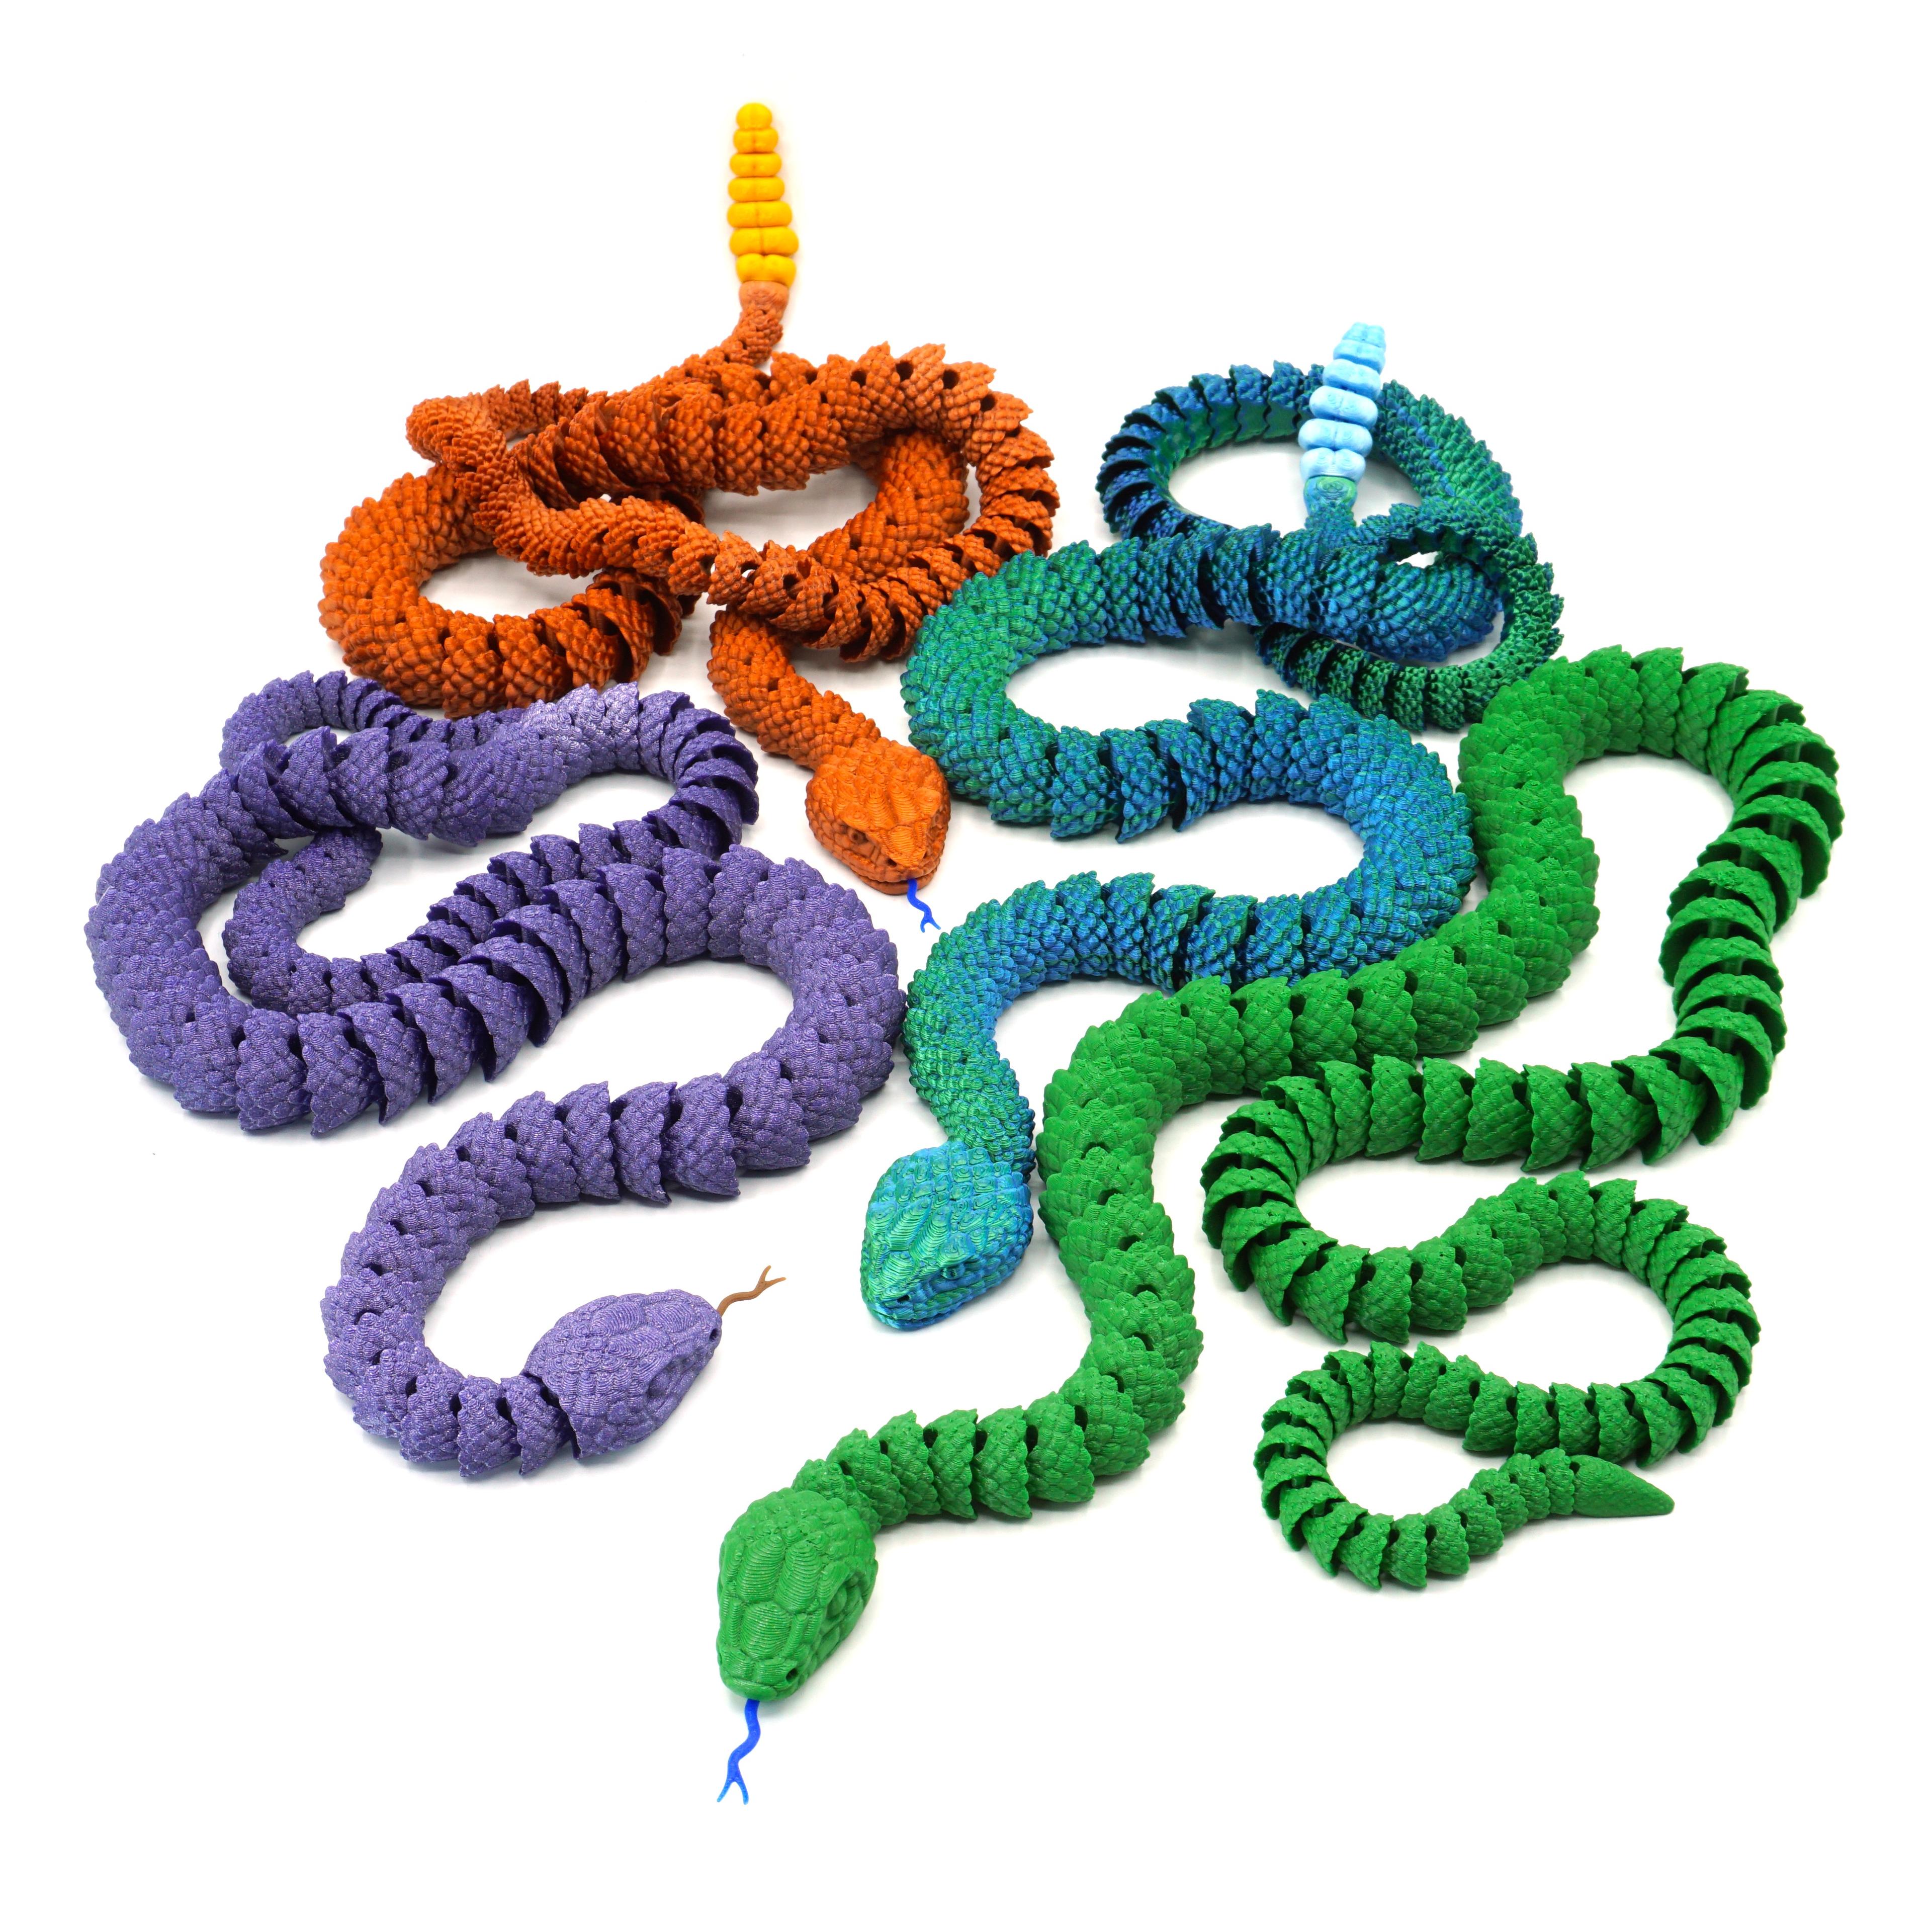 Snake and Rattlesnake 3d model